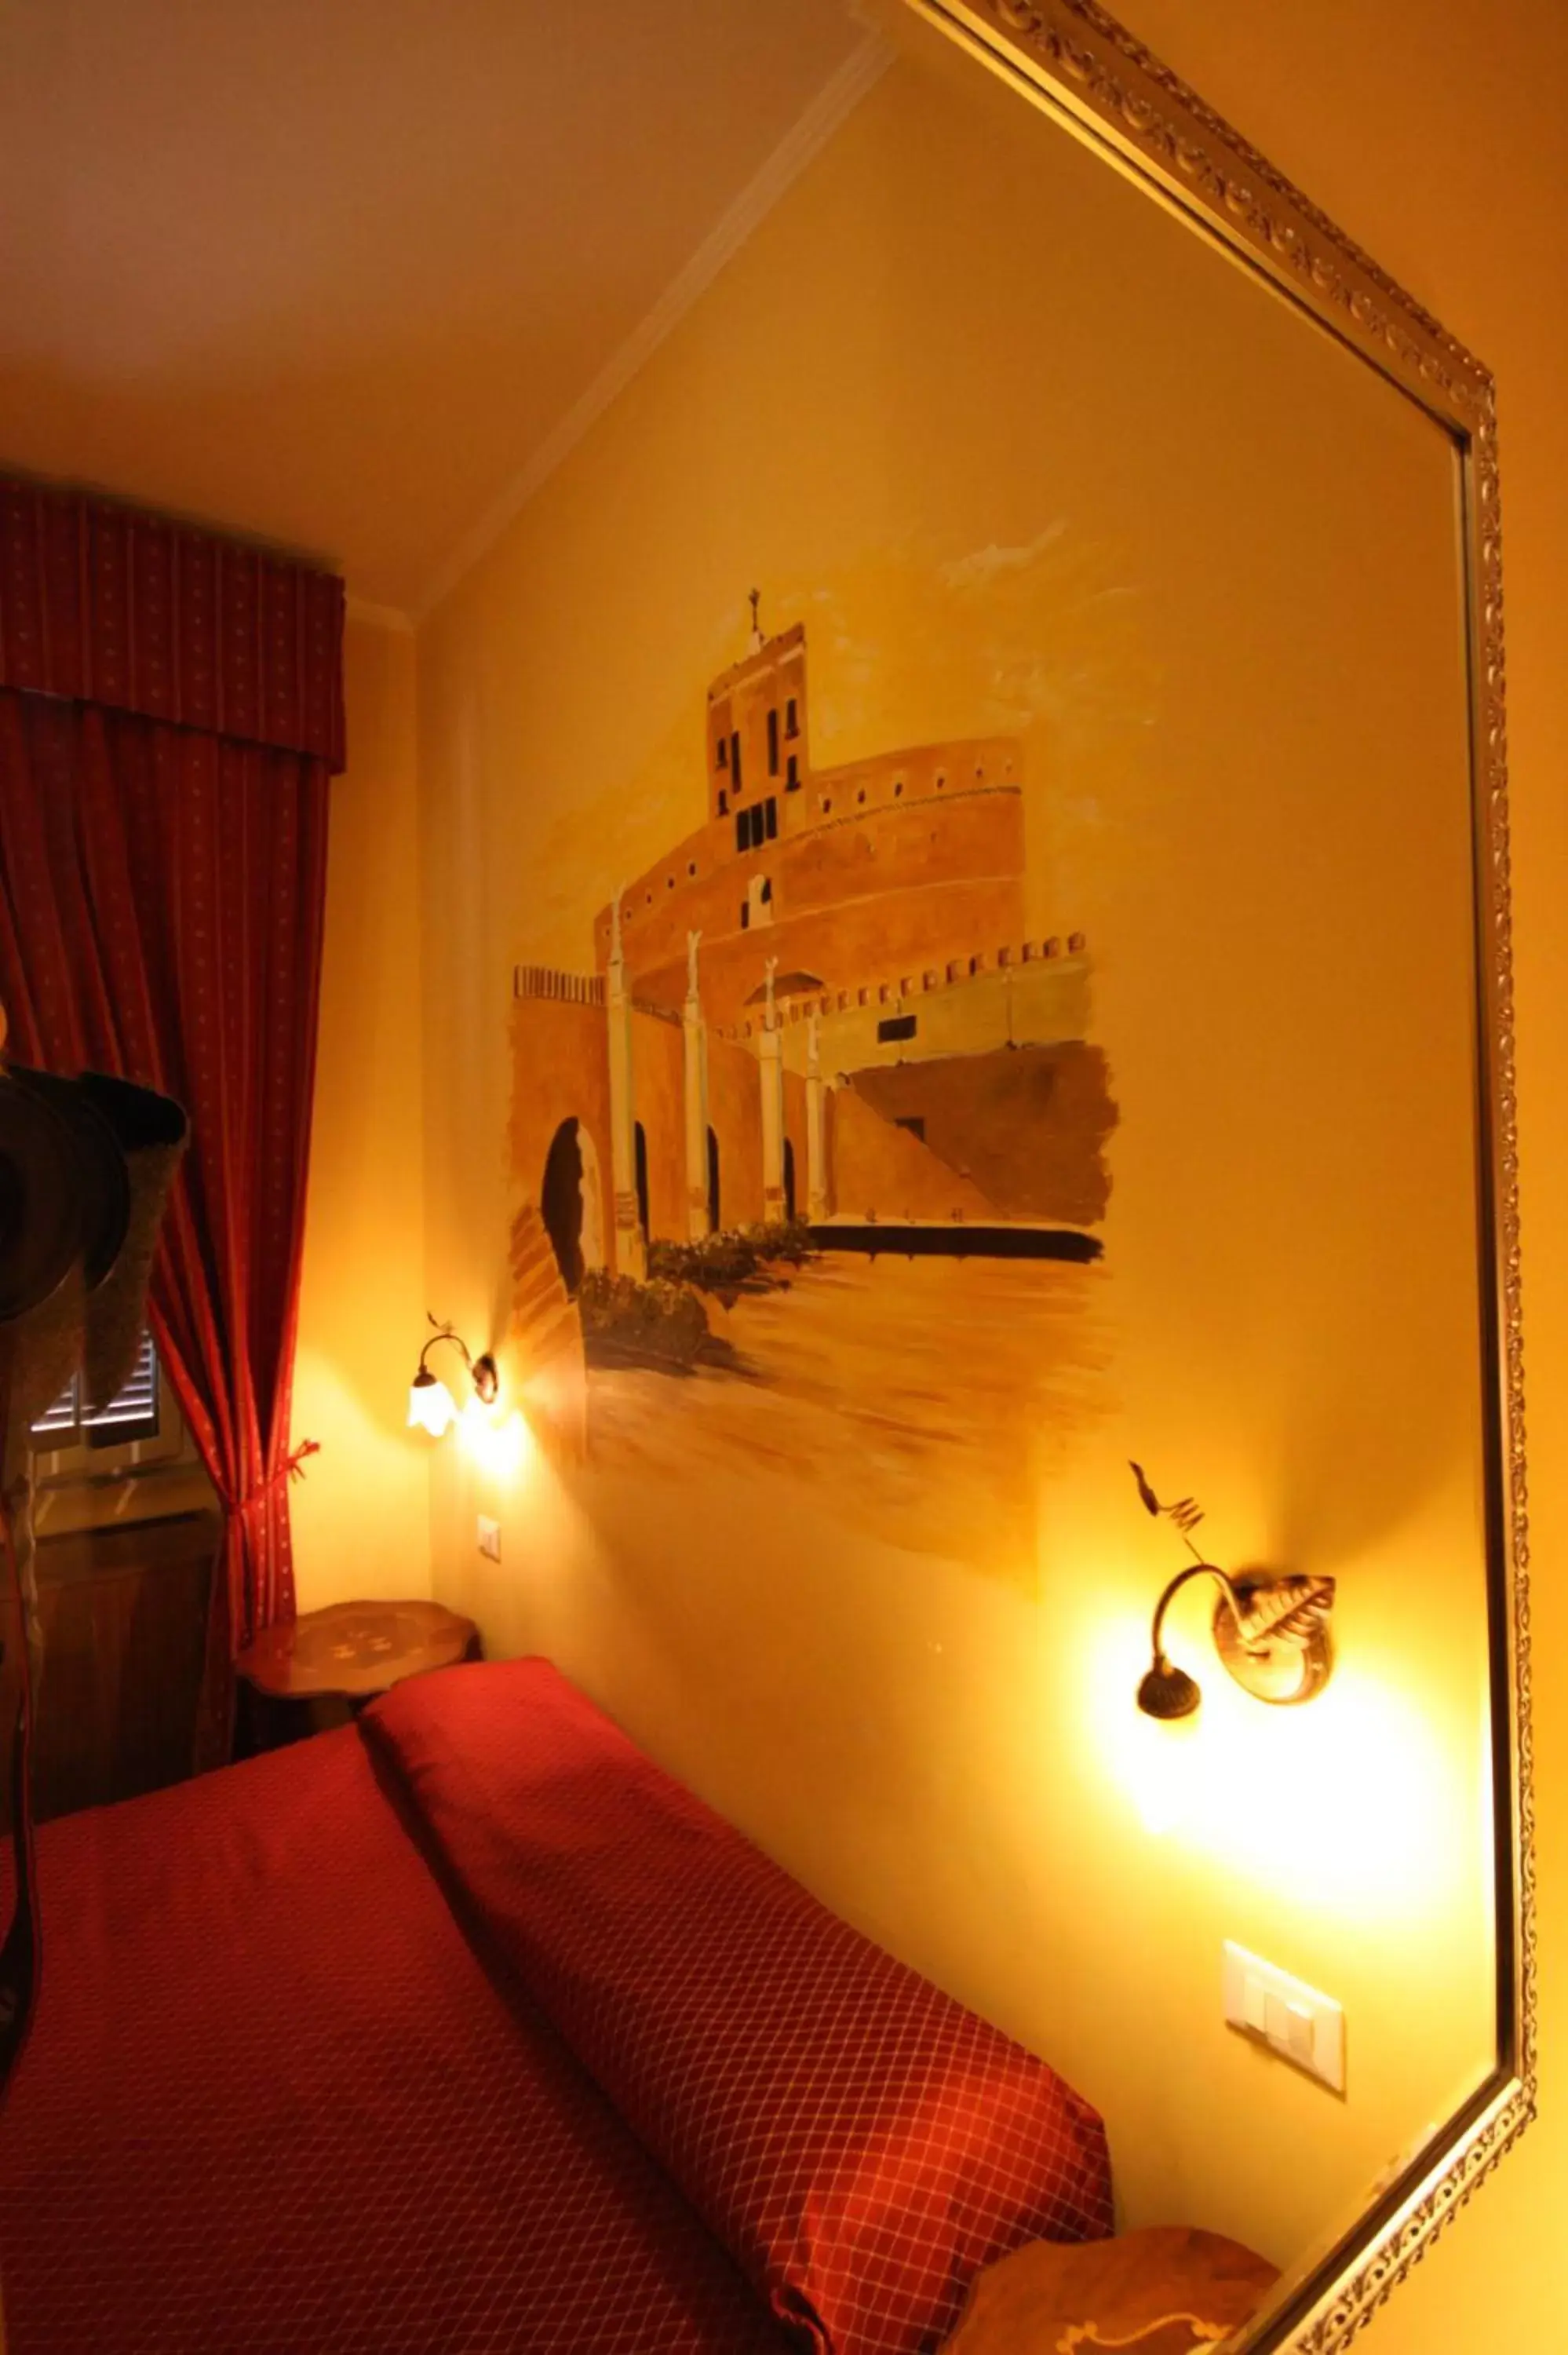 Decorative detail in Hotel Cherubini